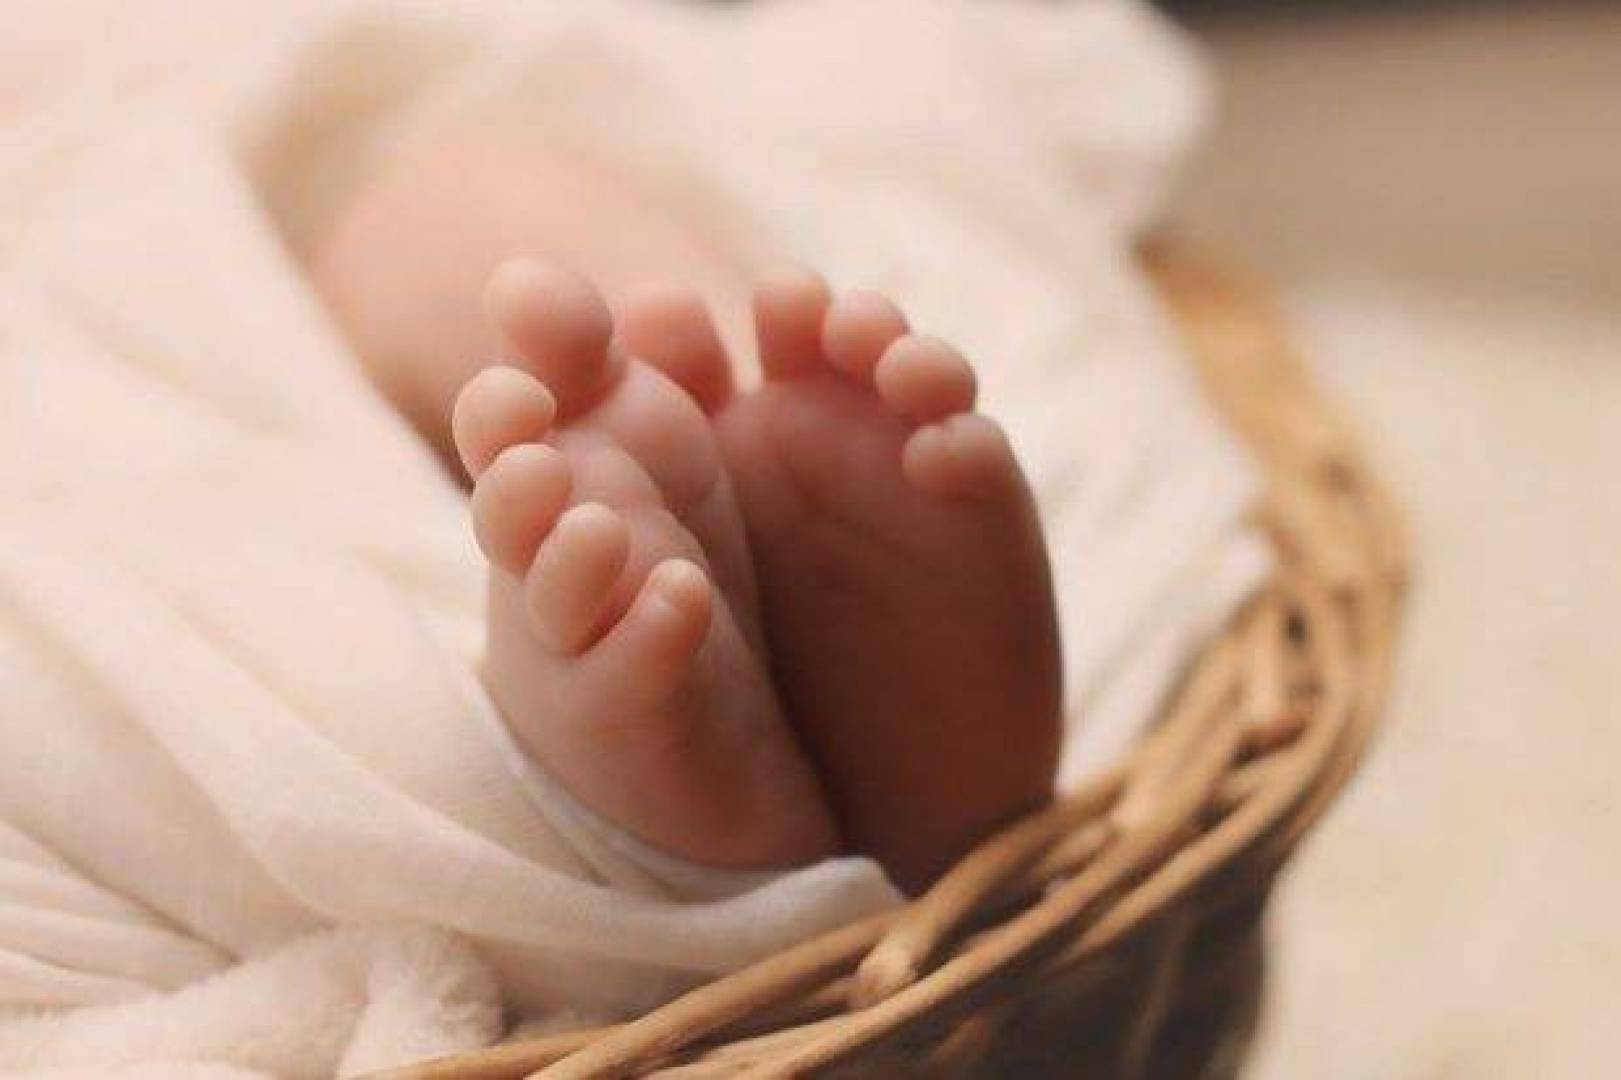 गर्भवती महिलाको लागि खैरो केटीलाई जन्म दिने सपनाको व्याख्या